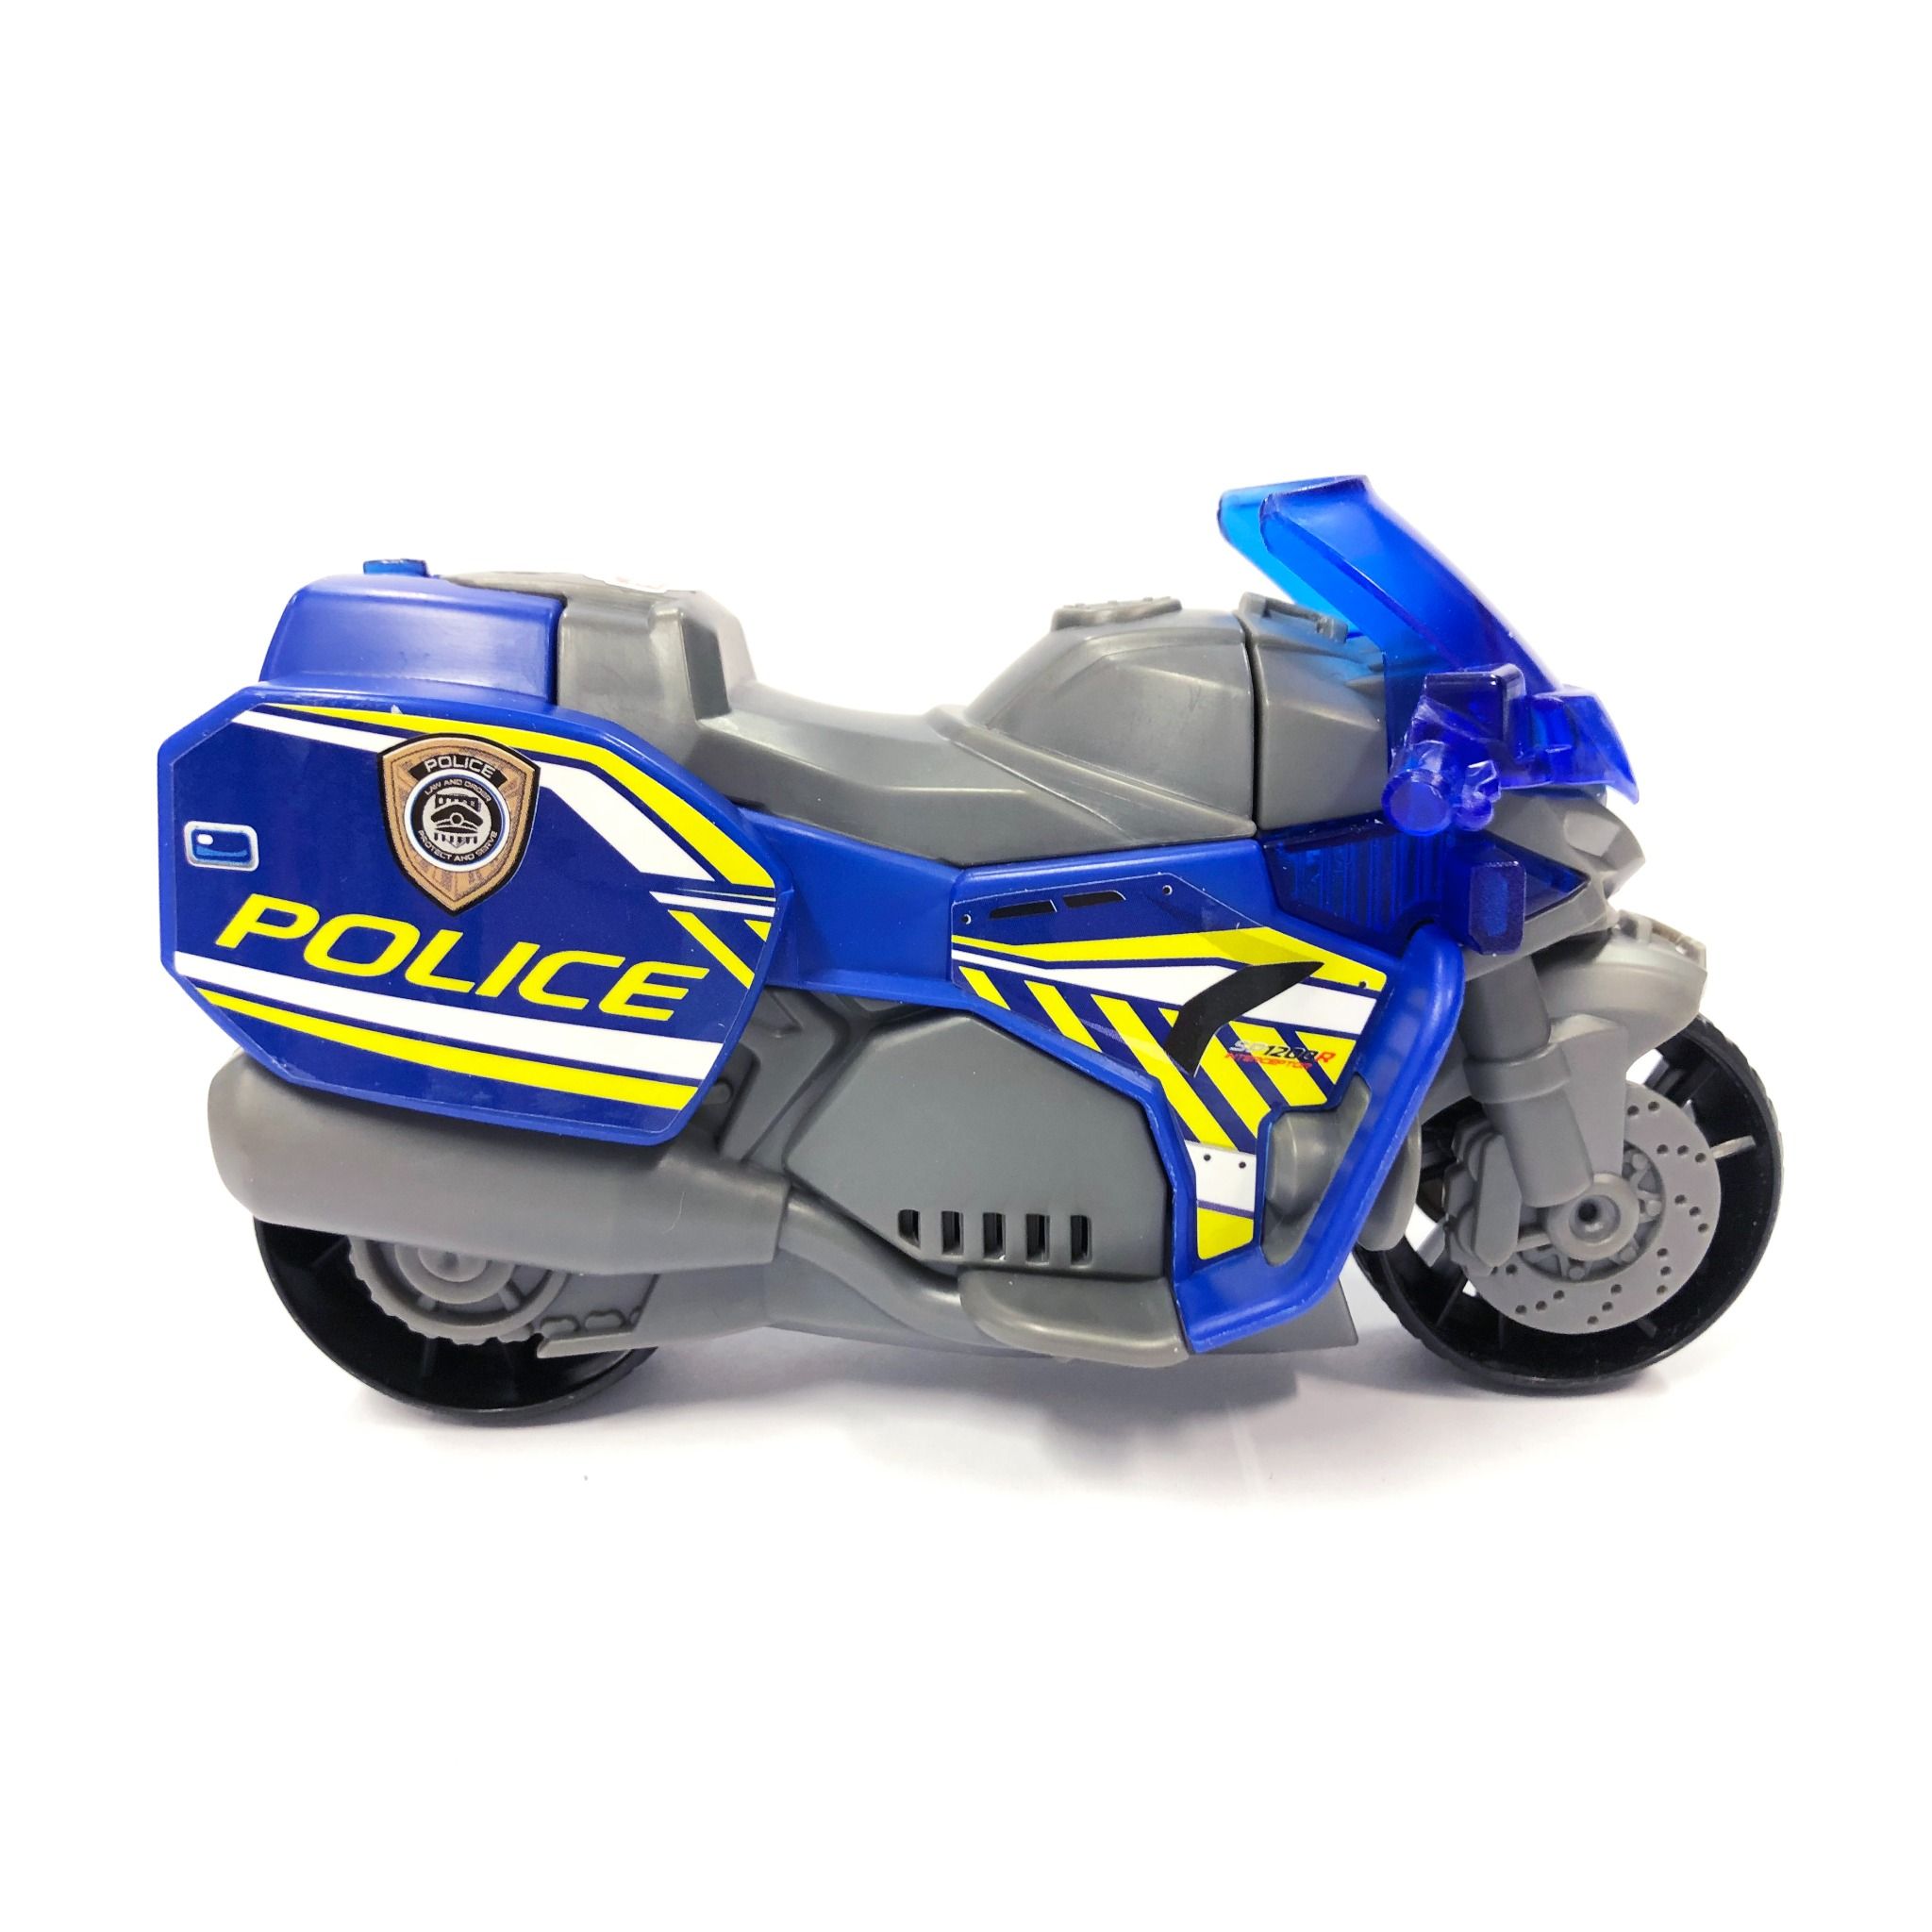  203302031 Đồ chơi Xe Mô Tô Cảnh sát DICKIE TOYS Police Motorbike 